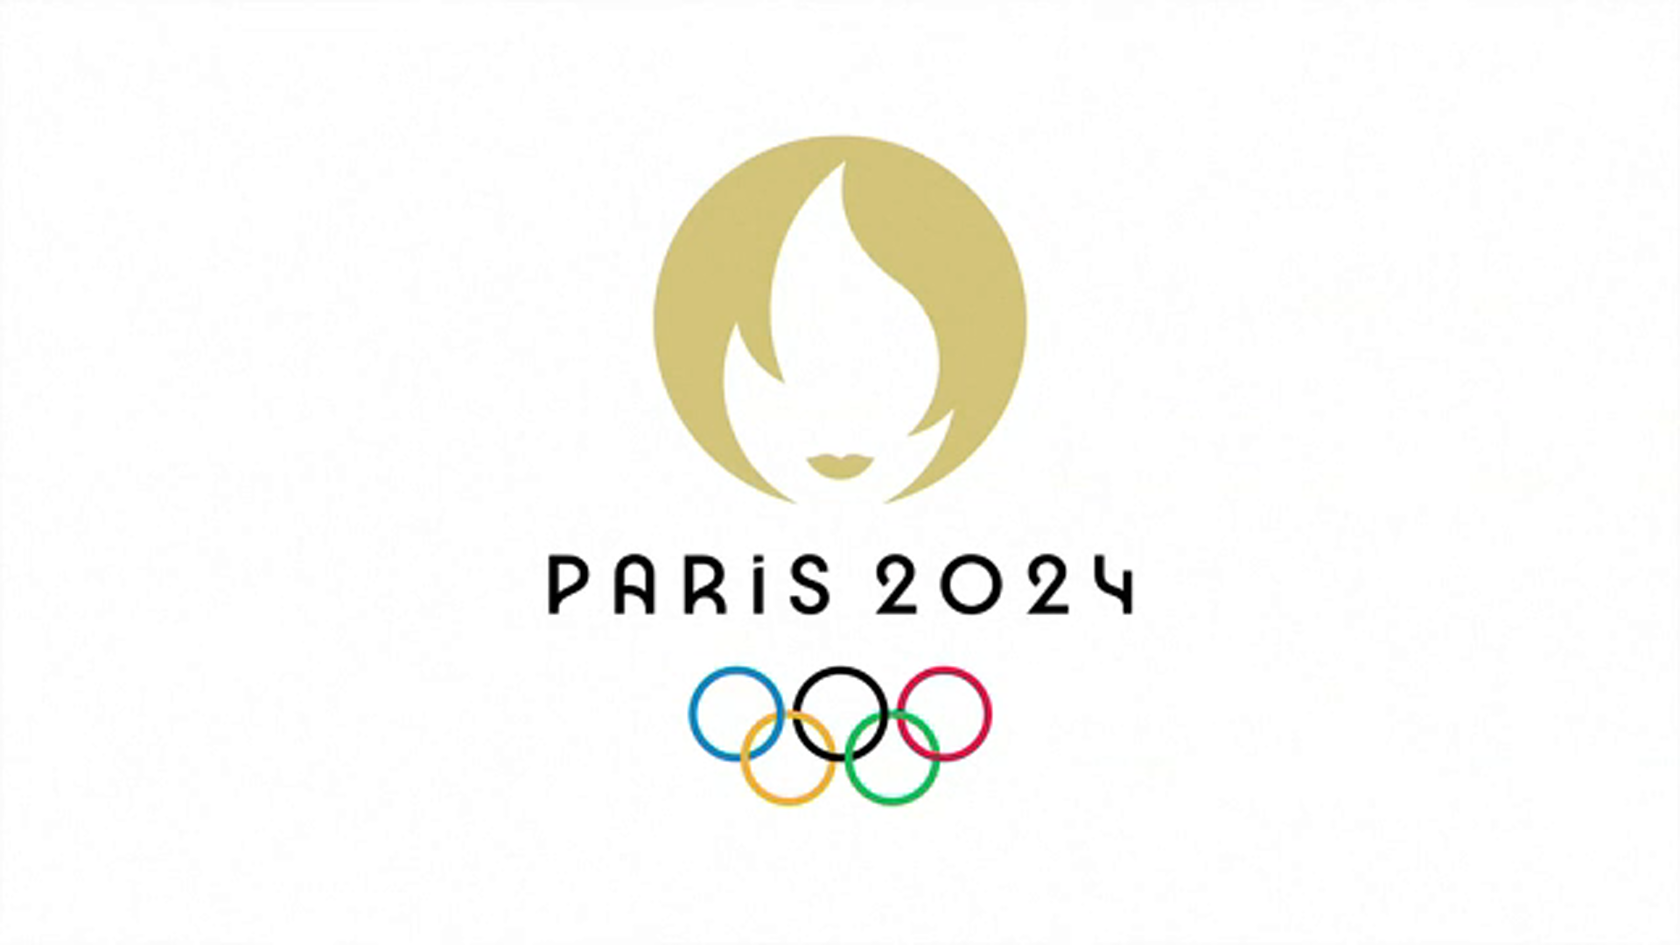 Ои в париже. Олимпийские игры в Париже 2024. Олимпийских игр–2024 в Париже лого. Логотип олимпиады.